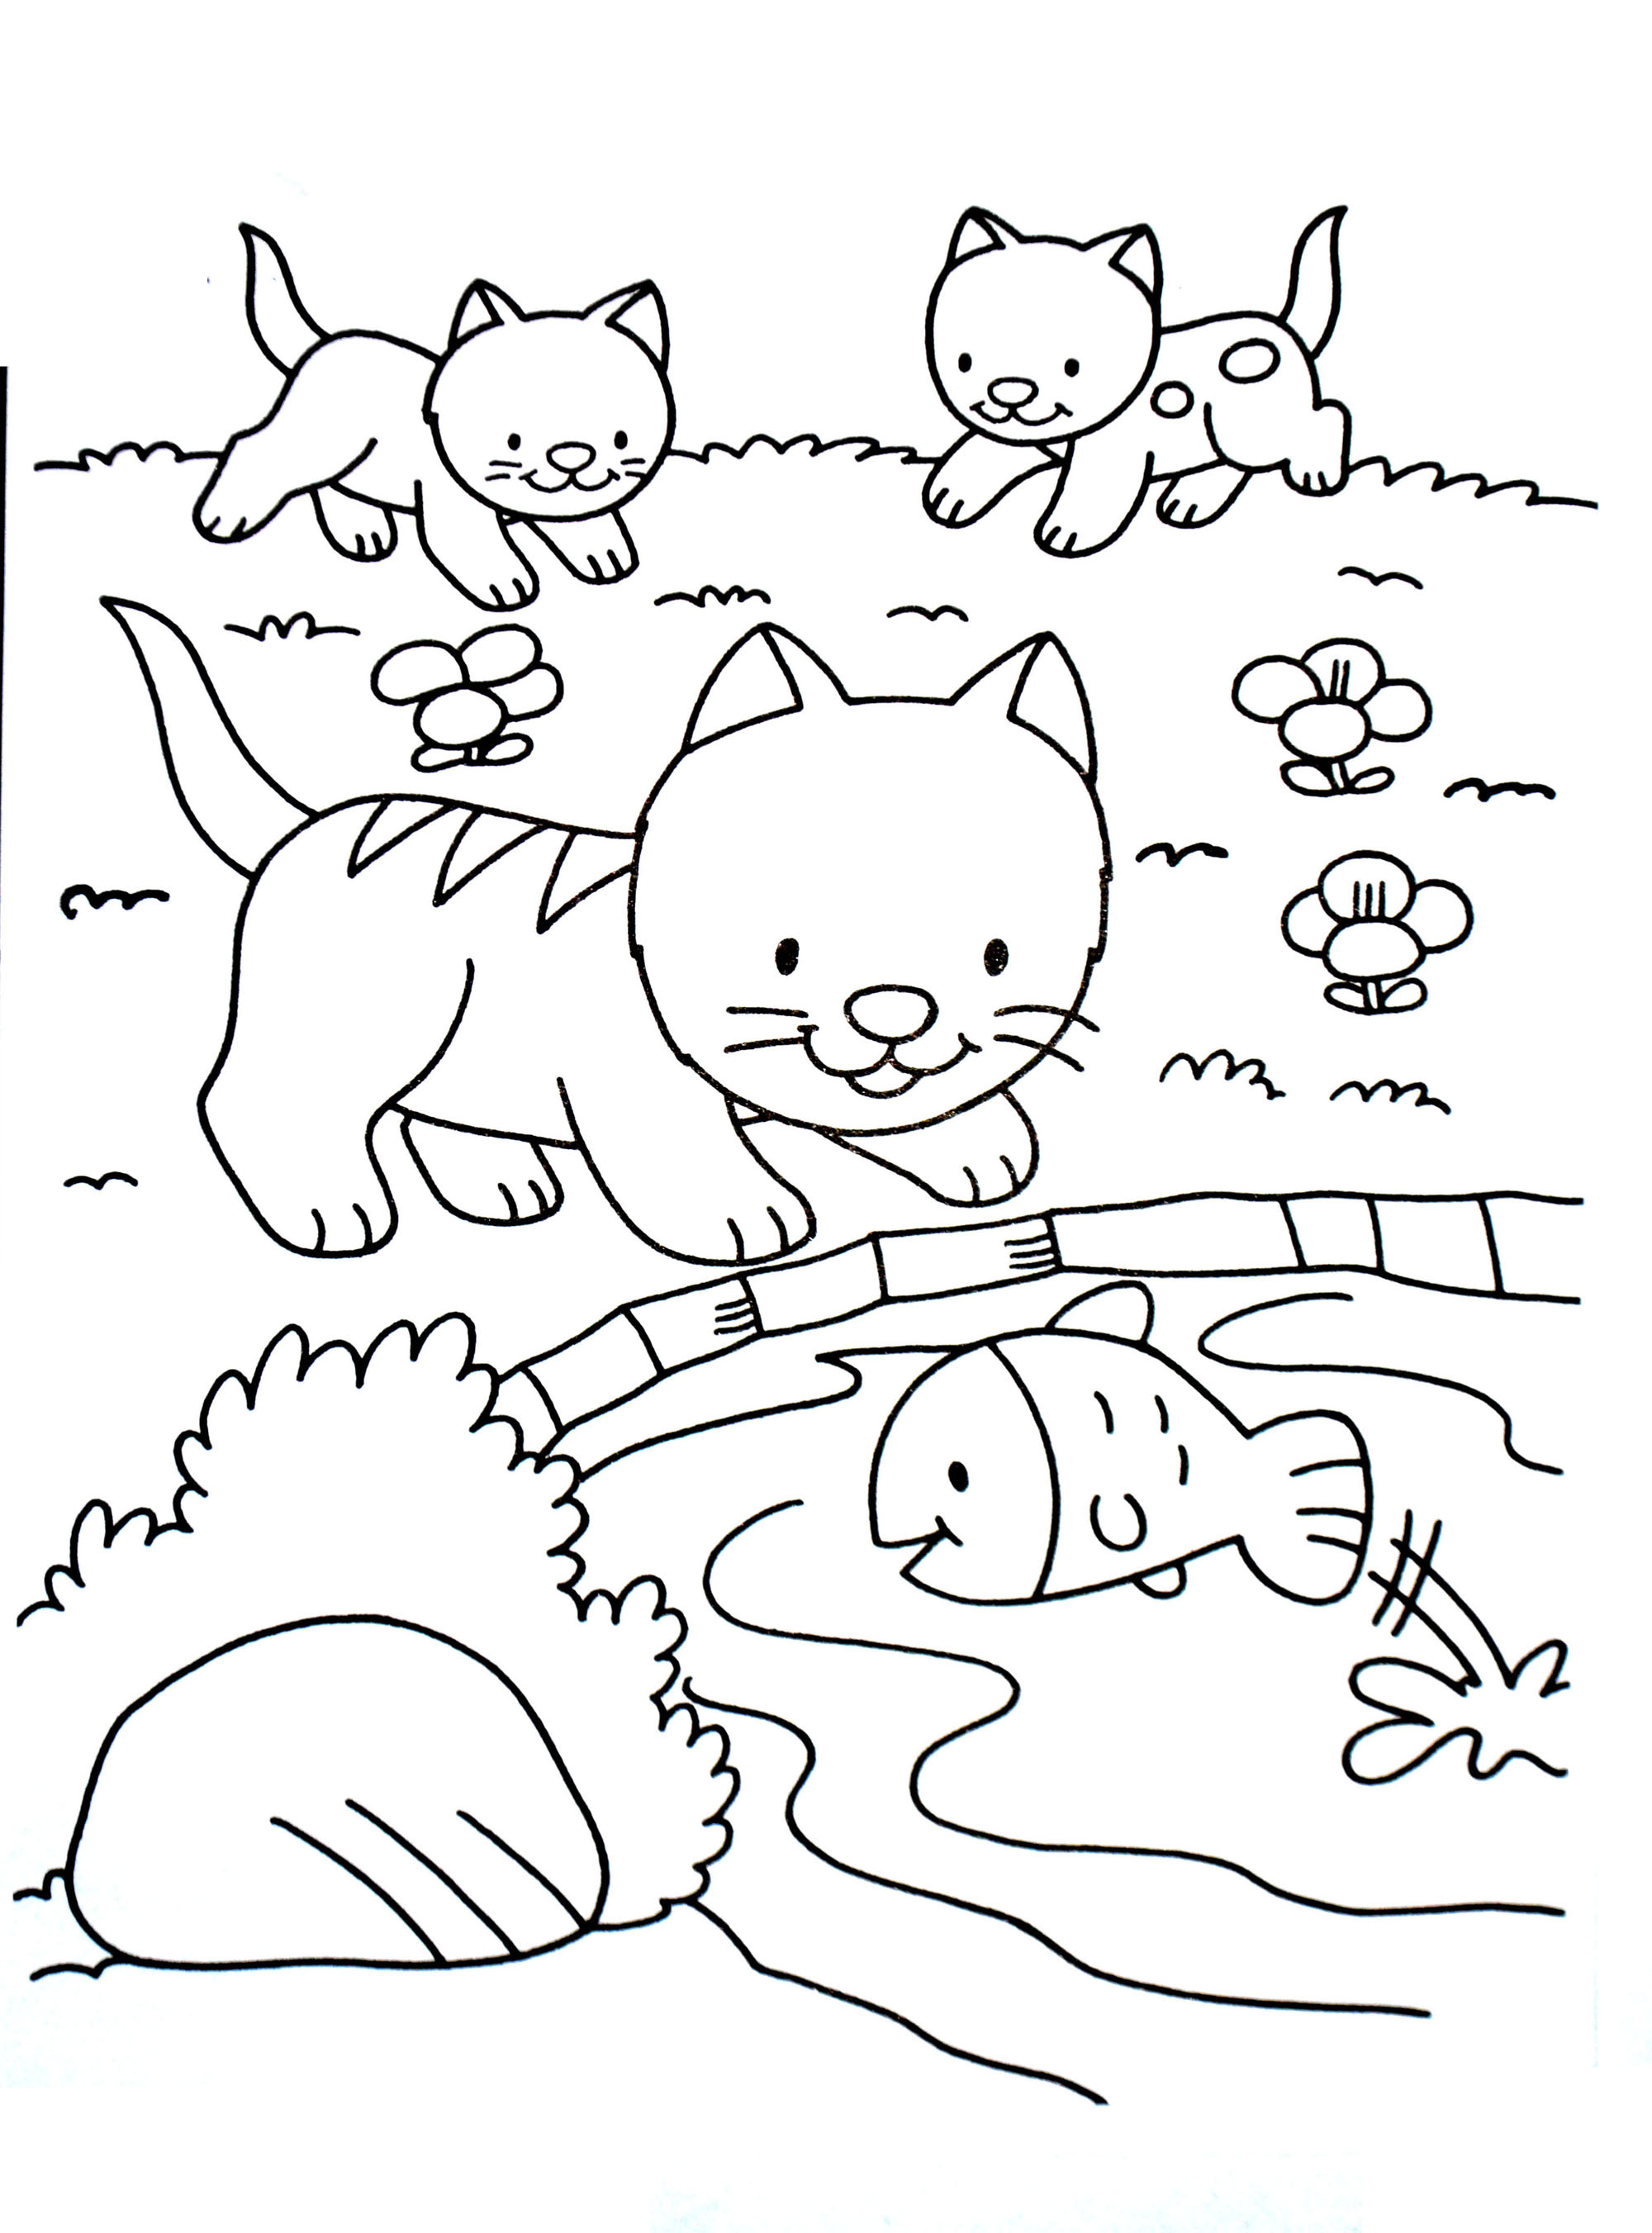 Dessin de chat à colorier, facile pour enfants